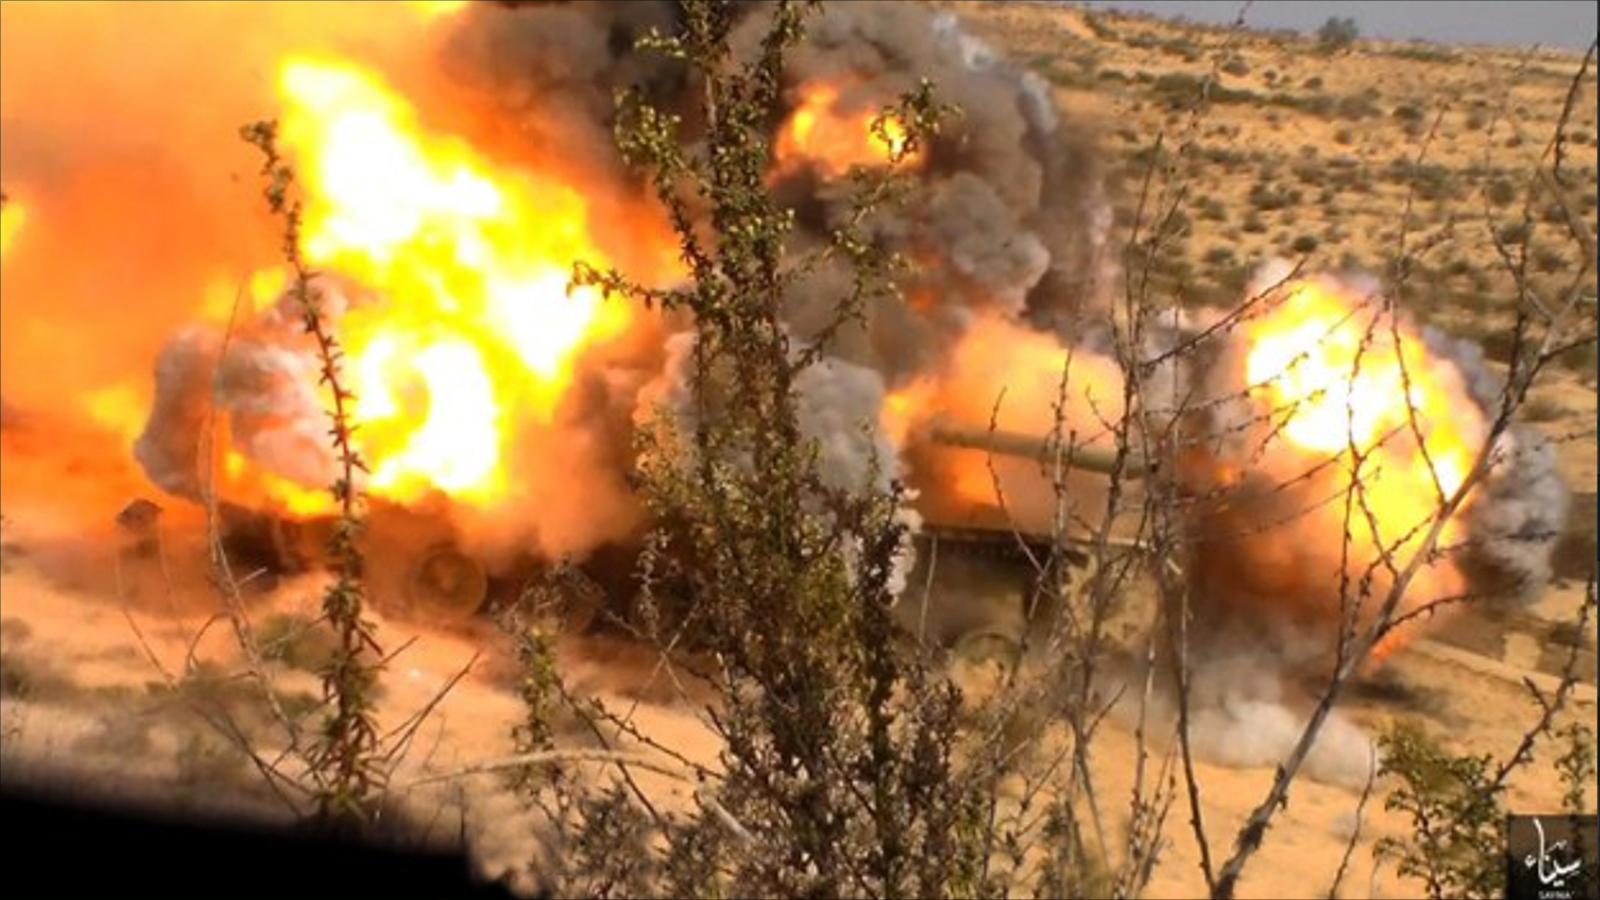 ‪صورة نشرها تنظيم ولاية سيناء لما قال إنها مدرعة عسكرية قام بتفجيرها بعدما استولى على ذخائر داخلها‬ (ناشطون-أرشيف)